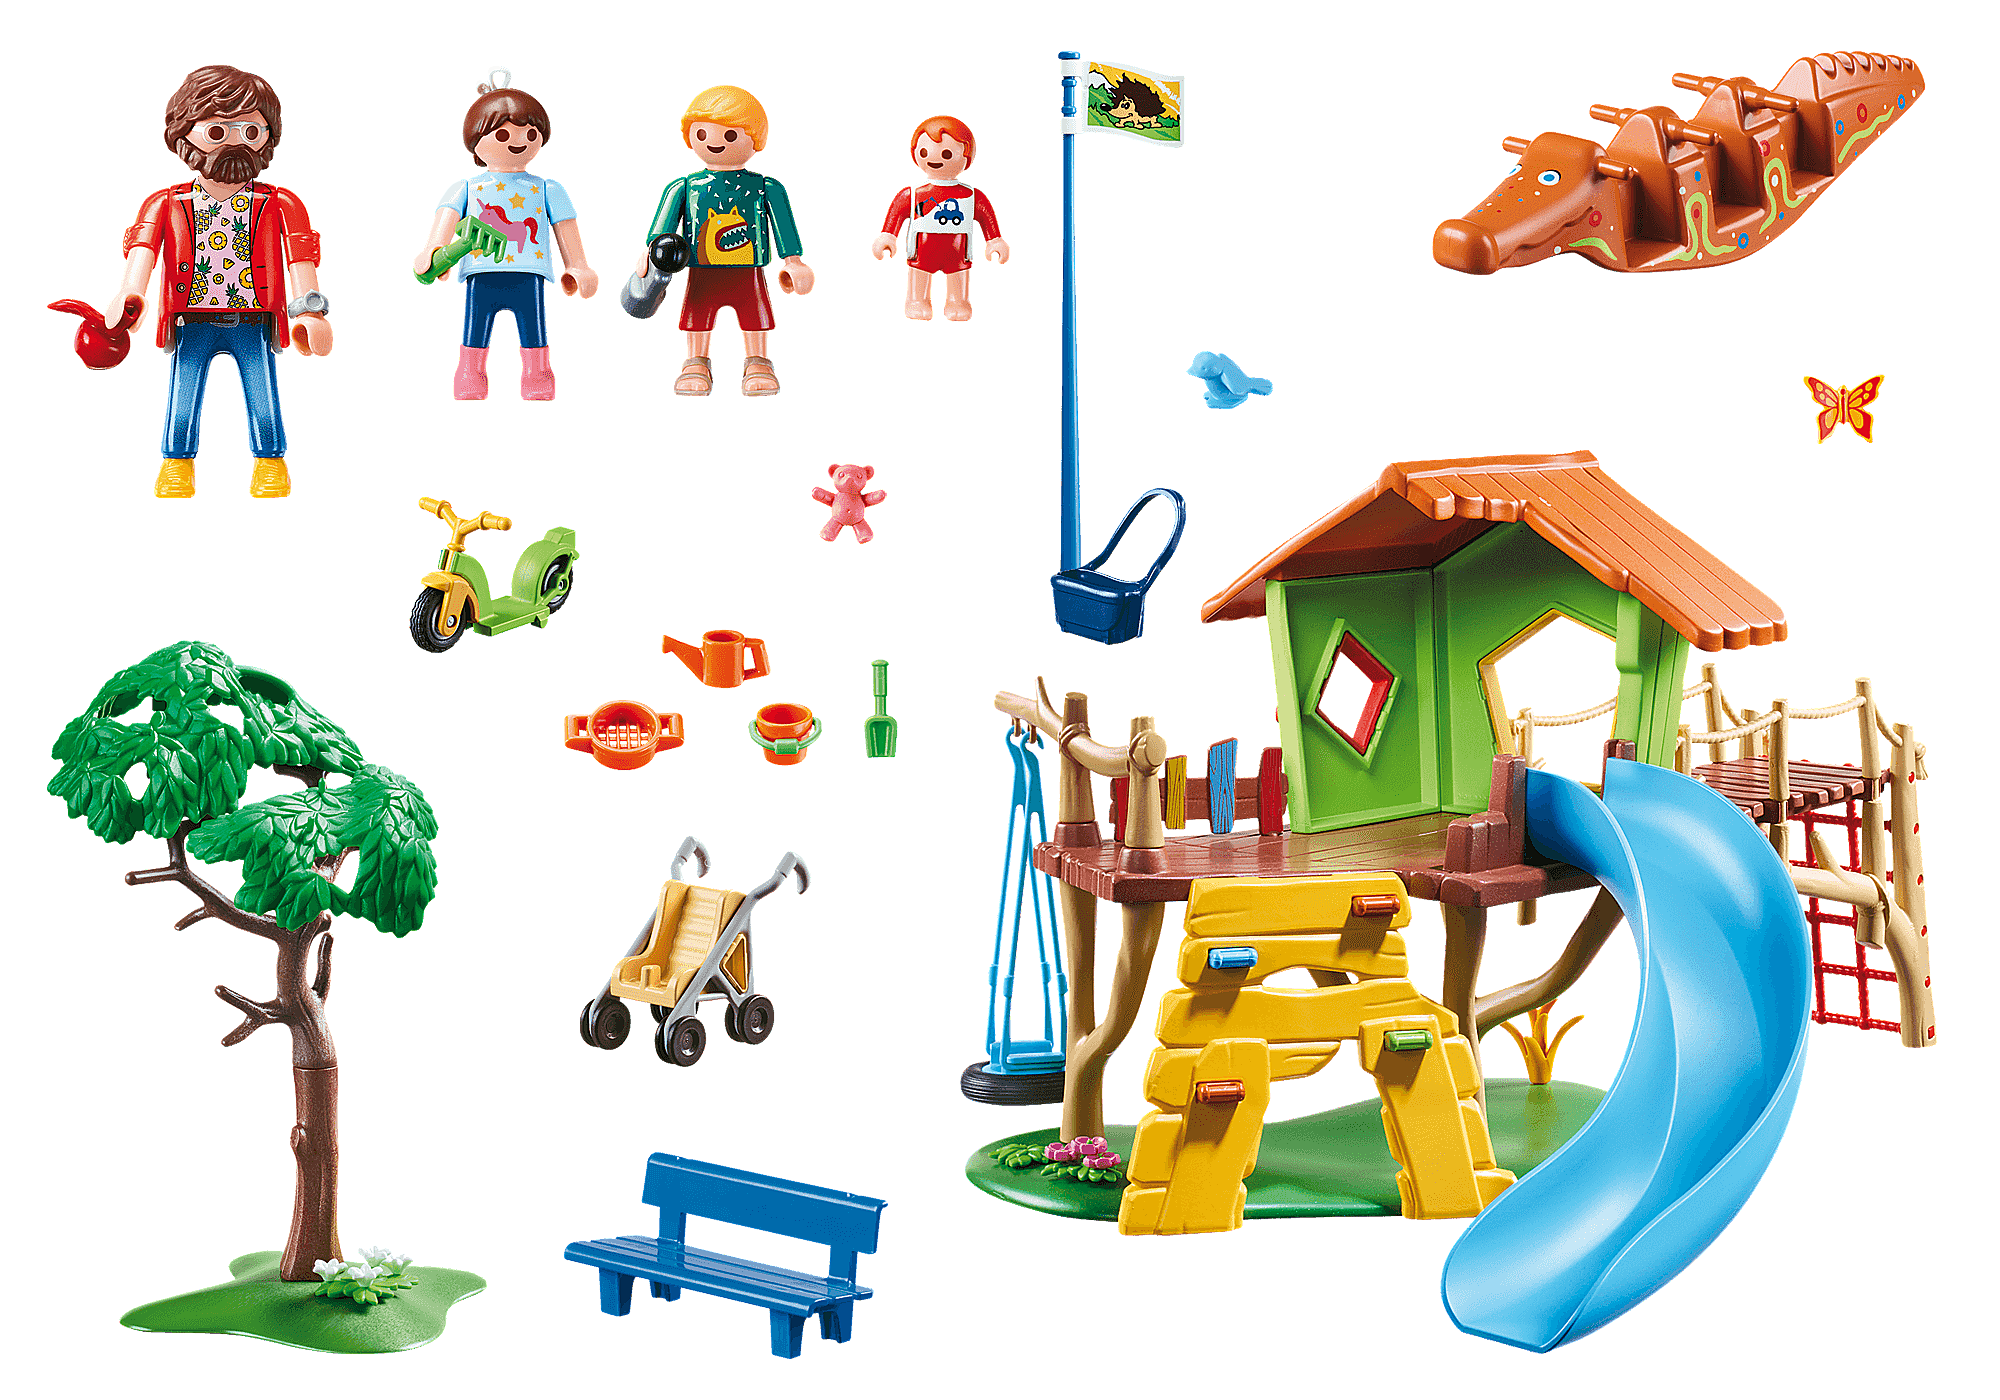 Lot Playmobil parc enfants aire de jeux